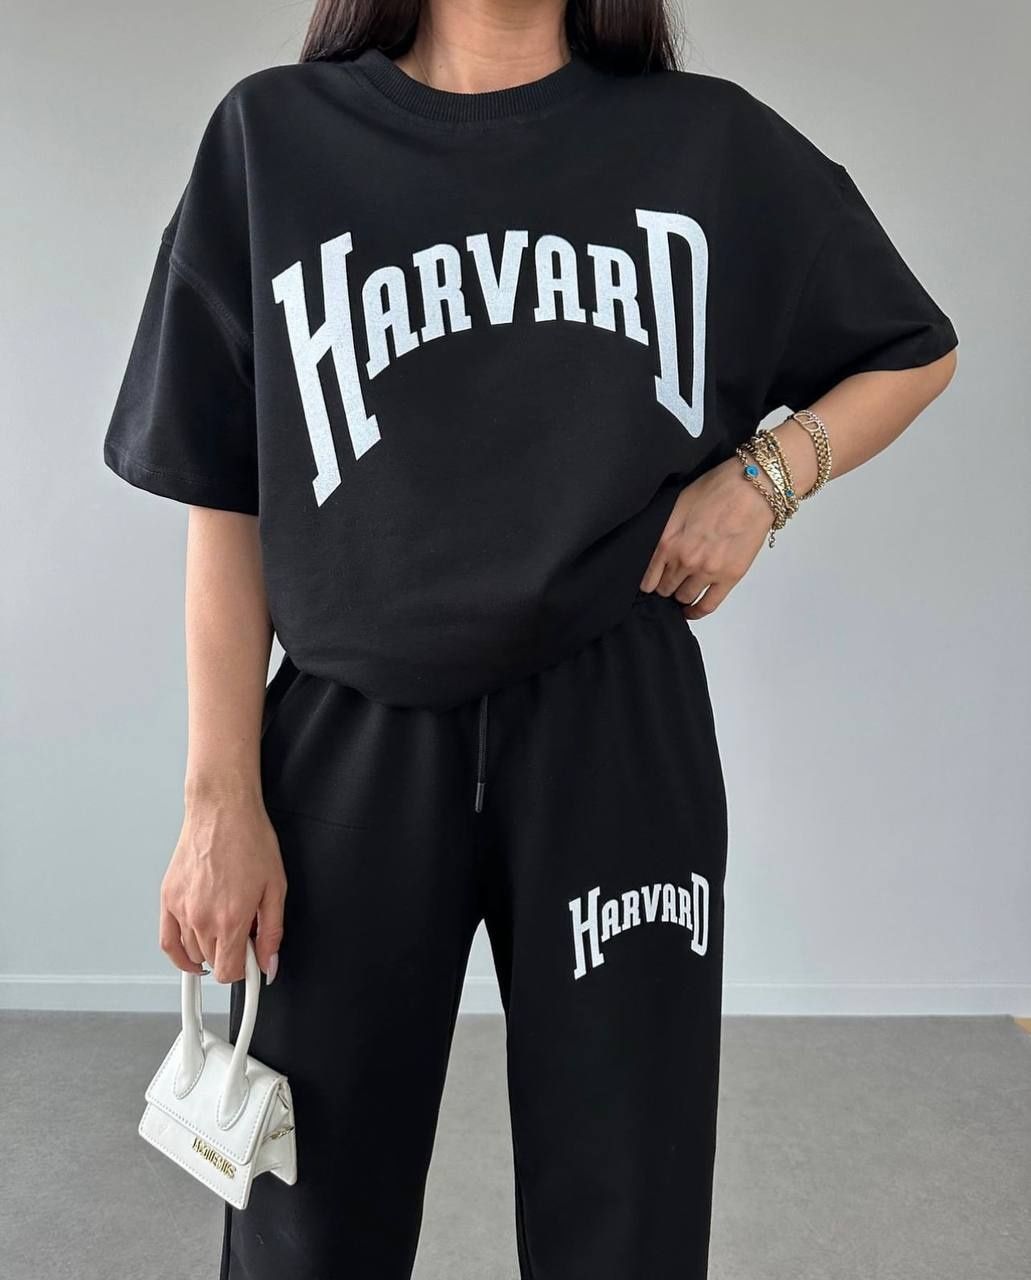 Жіночий спортивний костюм «HarvarD»/ Женский спортивный костюм